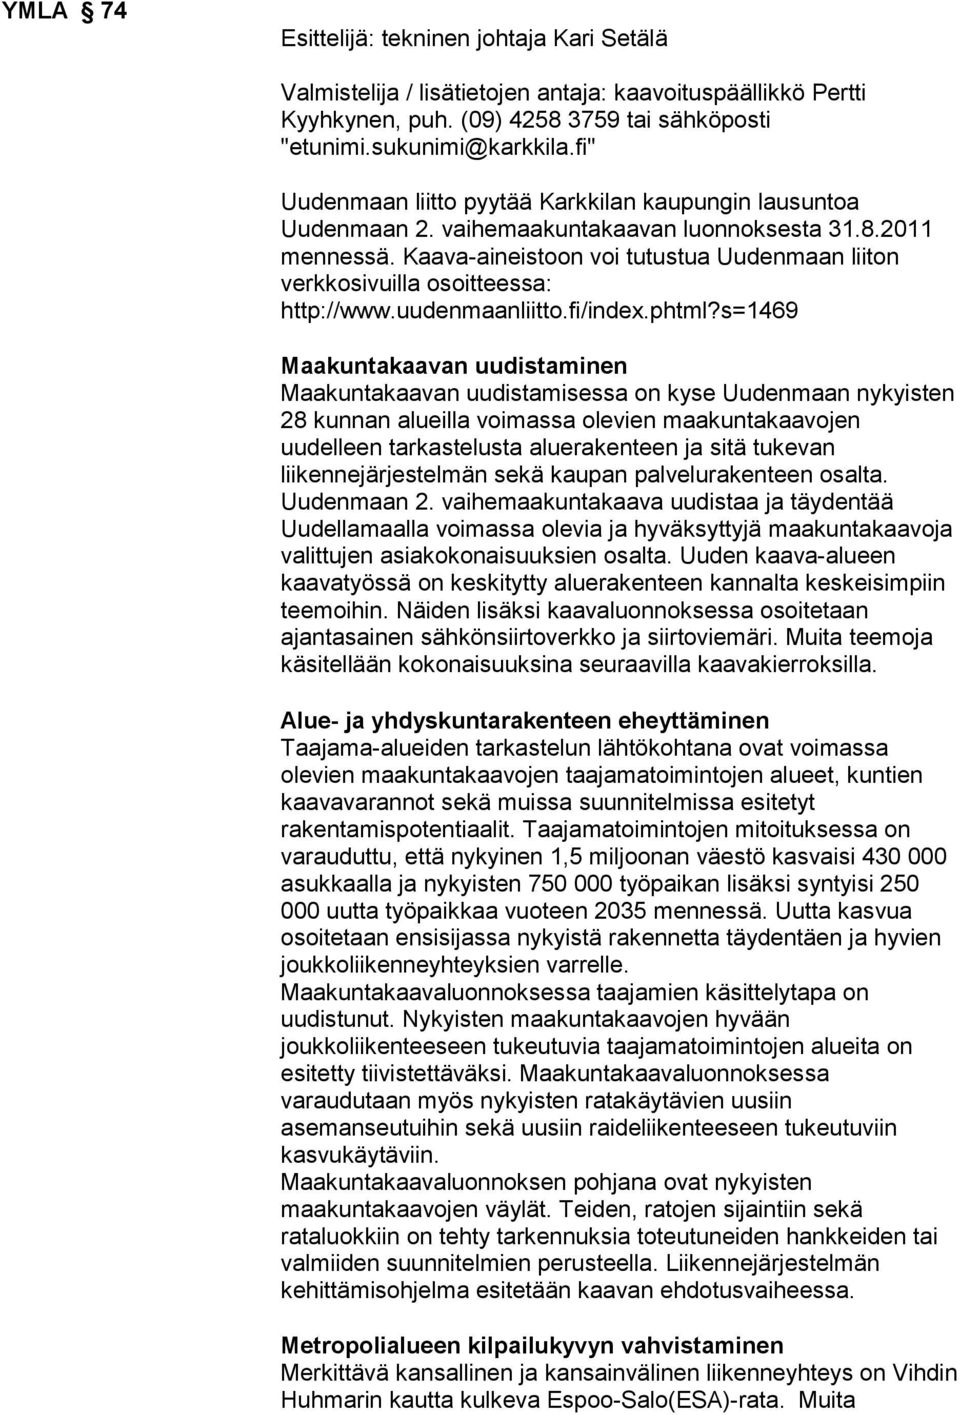 Kaava-aineistoon voi tutustua Uudenmaan liiton verkkosivuilla osoitteessa: http://www.uudenmaanliitto.fi/index.phtml?